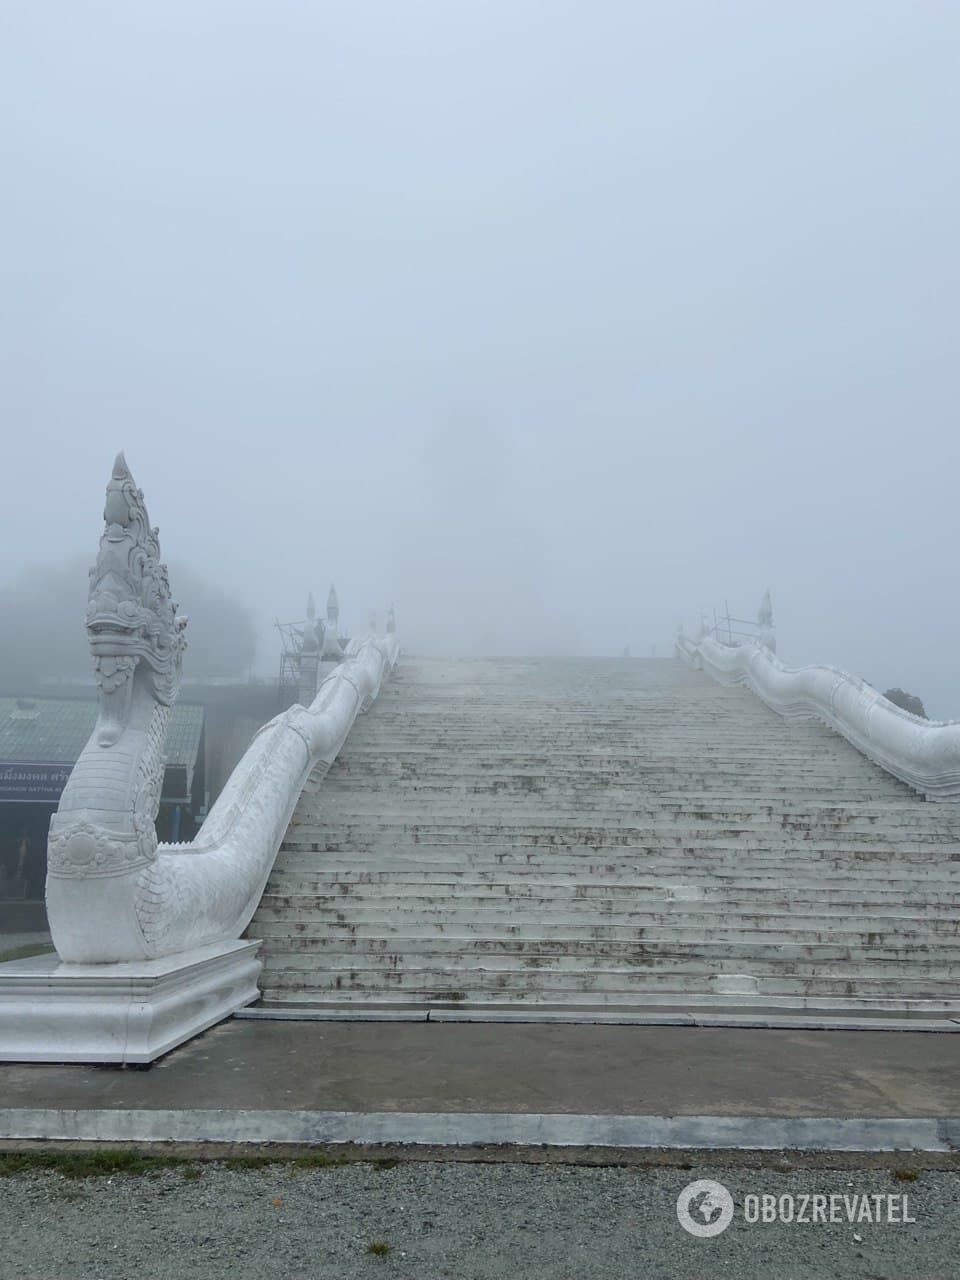 Лестница, ведущая к Большому Будде